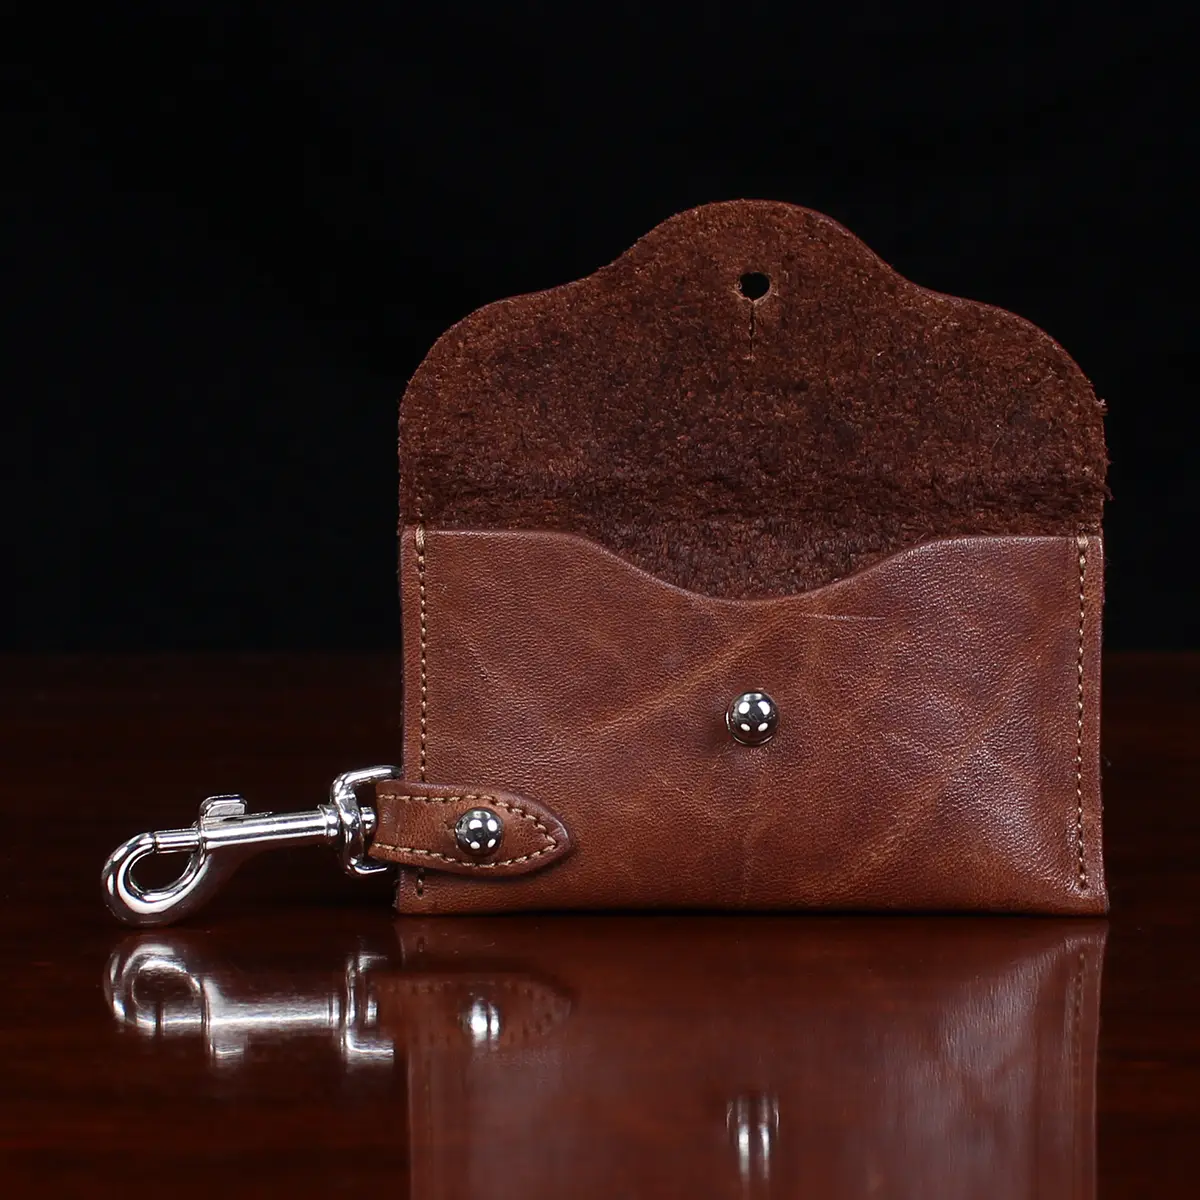 leather key holder